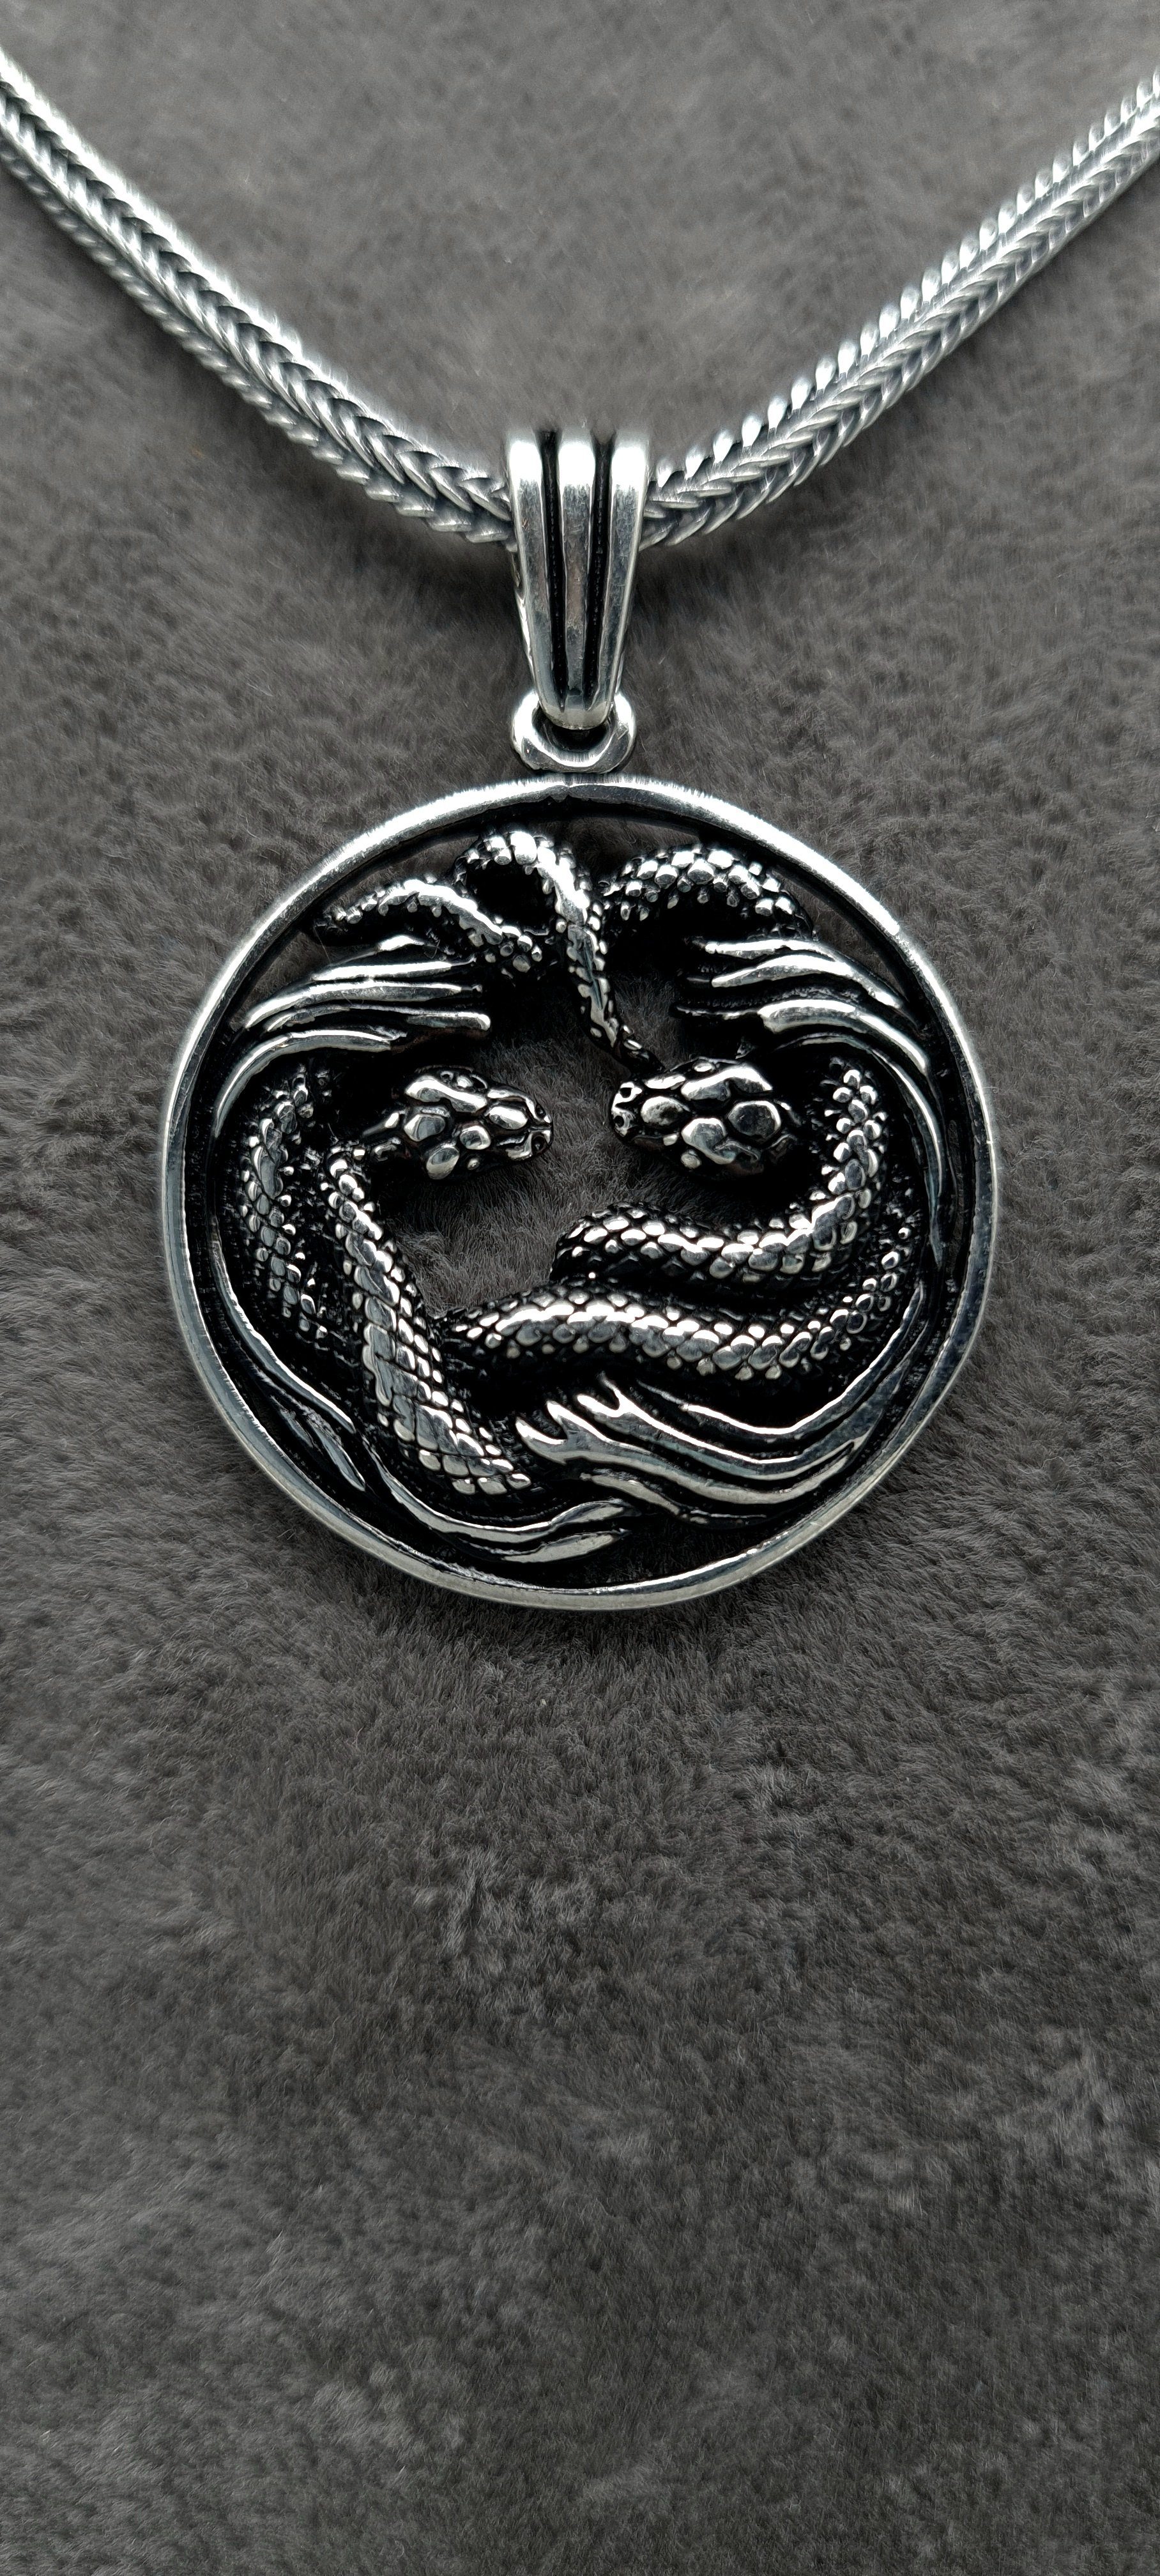 NAHLE Anhänger Silber Damen Halskette Silberkette Silber rhodiniert Schlangenkette (inklusive Silber 925 Schmuckbox), - Anhänger Schlangen